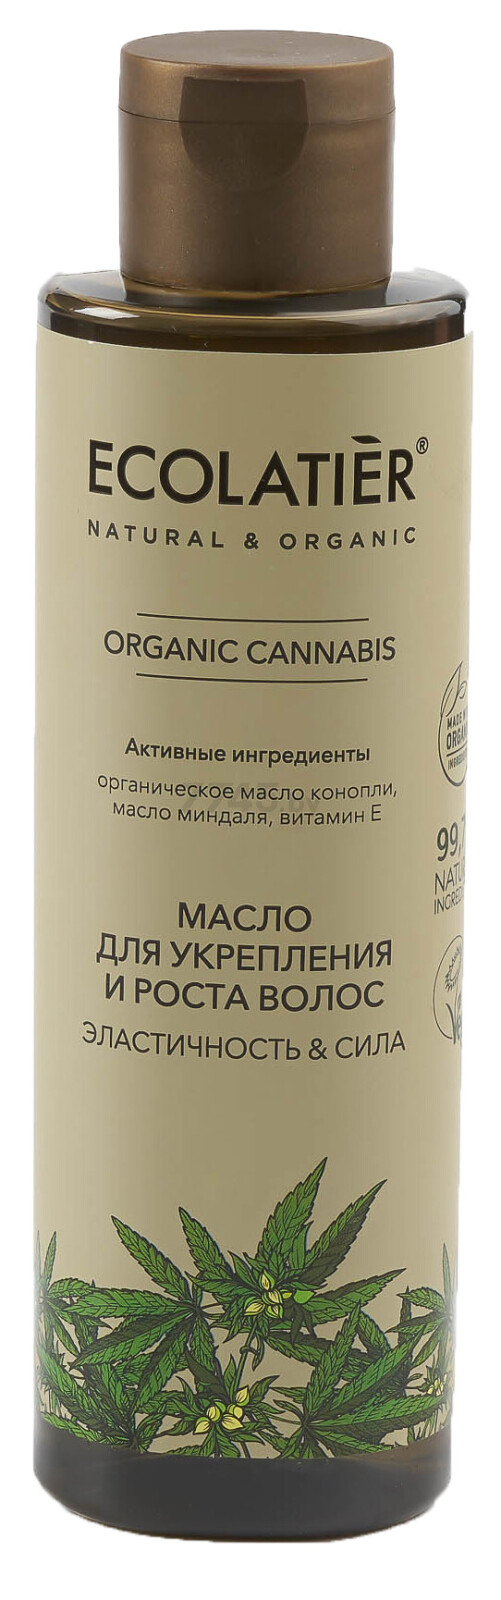 Масло ECOLATIER Organic Cannabis Эластичность и Сила 200 мл (4620046175041)